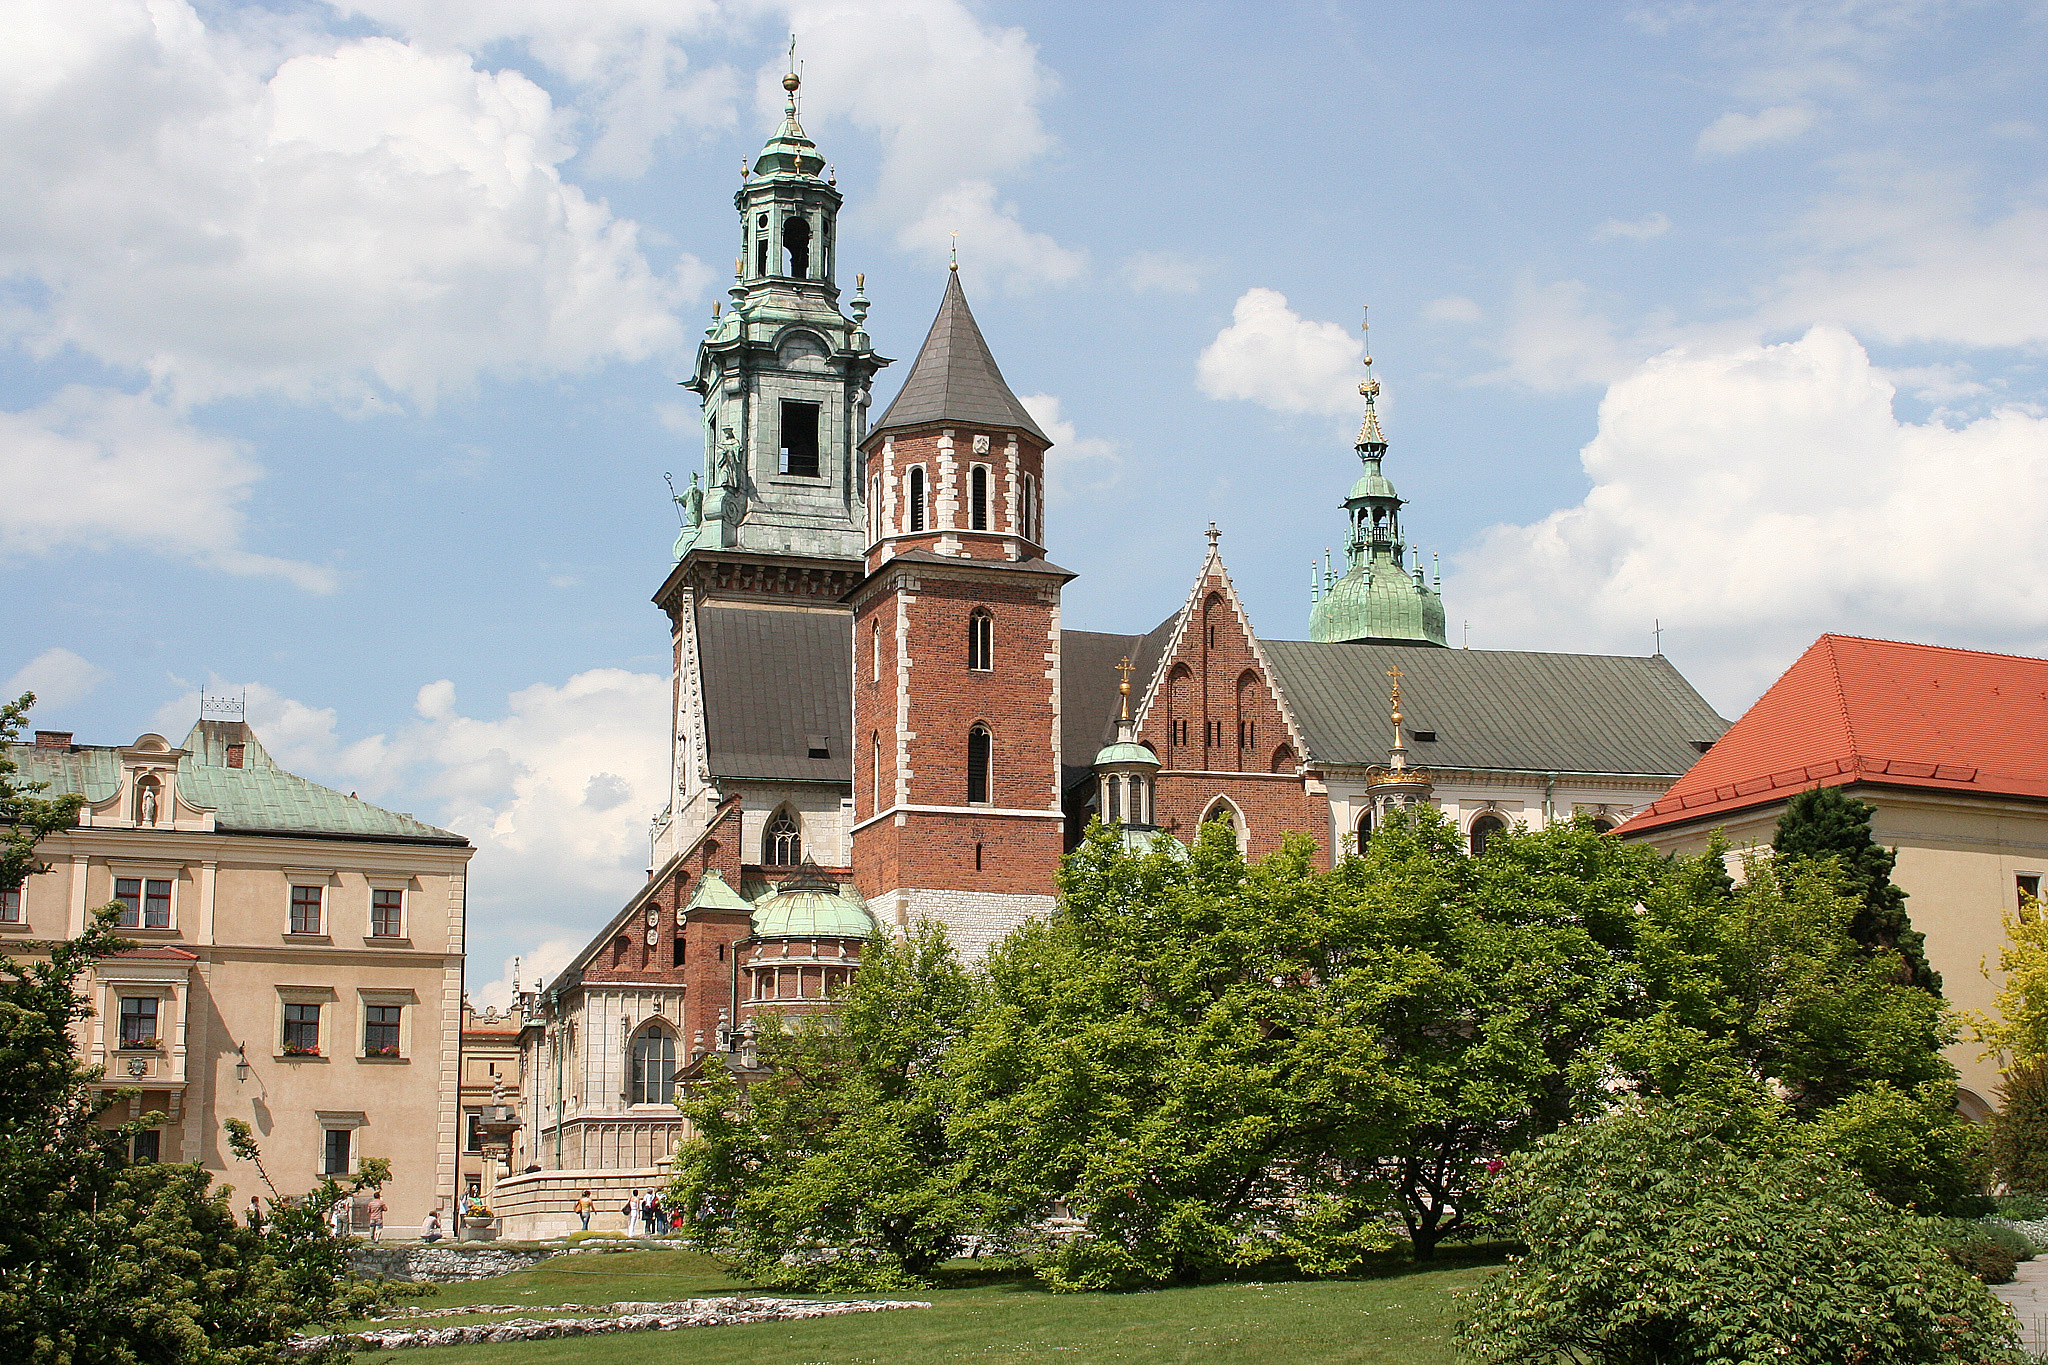 Krakow, Wawel